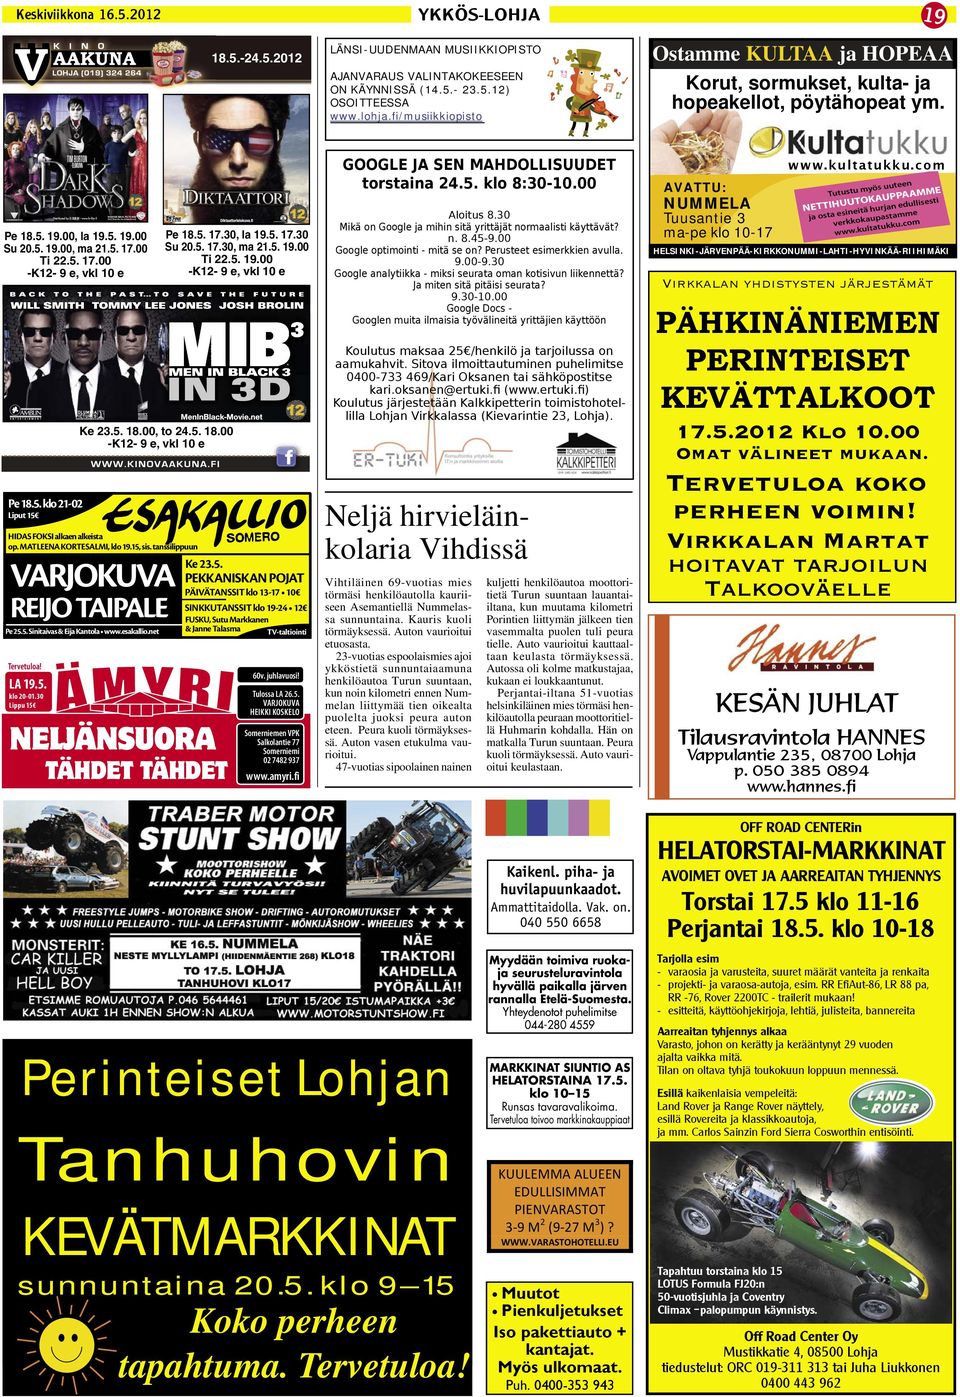 OKT LOHJA KARKALI Maaseudun rauhassa tilava ja hyväkuntoinen - PDF Free  Download